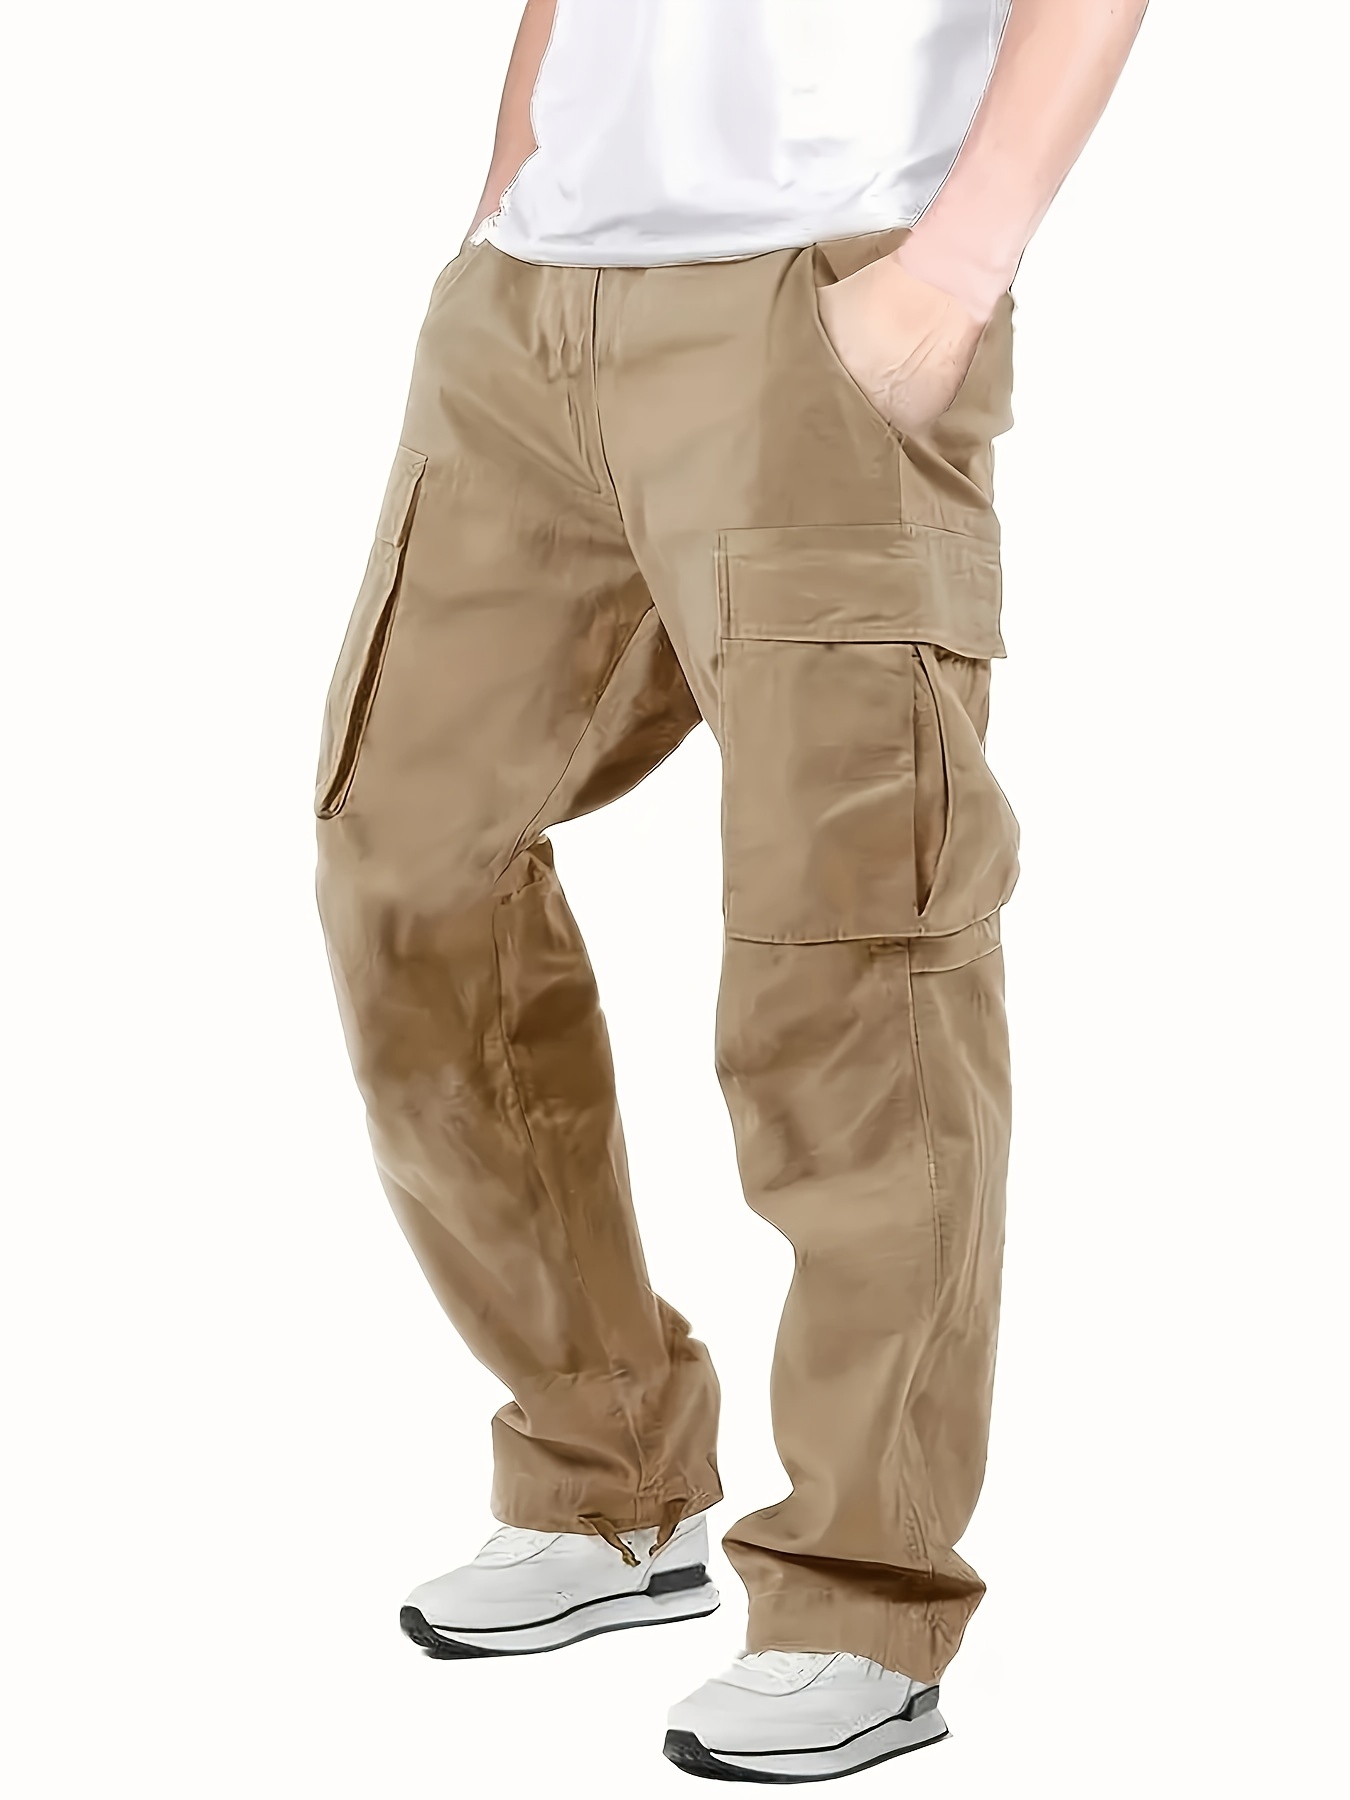 Men's Cargo Pants Capri Pant Elastic Waist Flap Pockets Hip Hop Baggy Harem  Pants Sports Pants Jogging Trousers